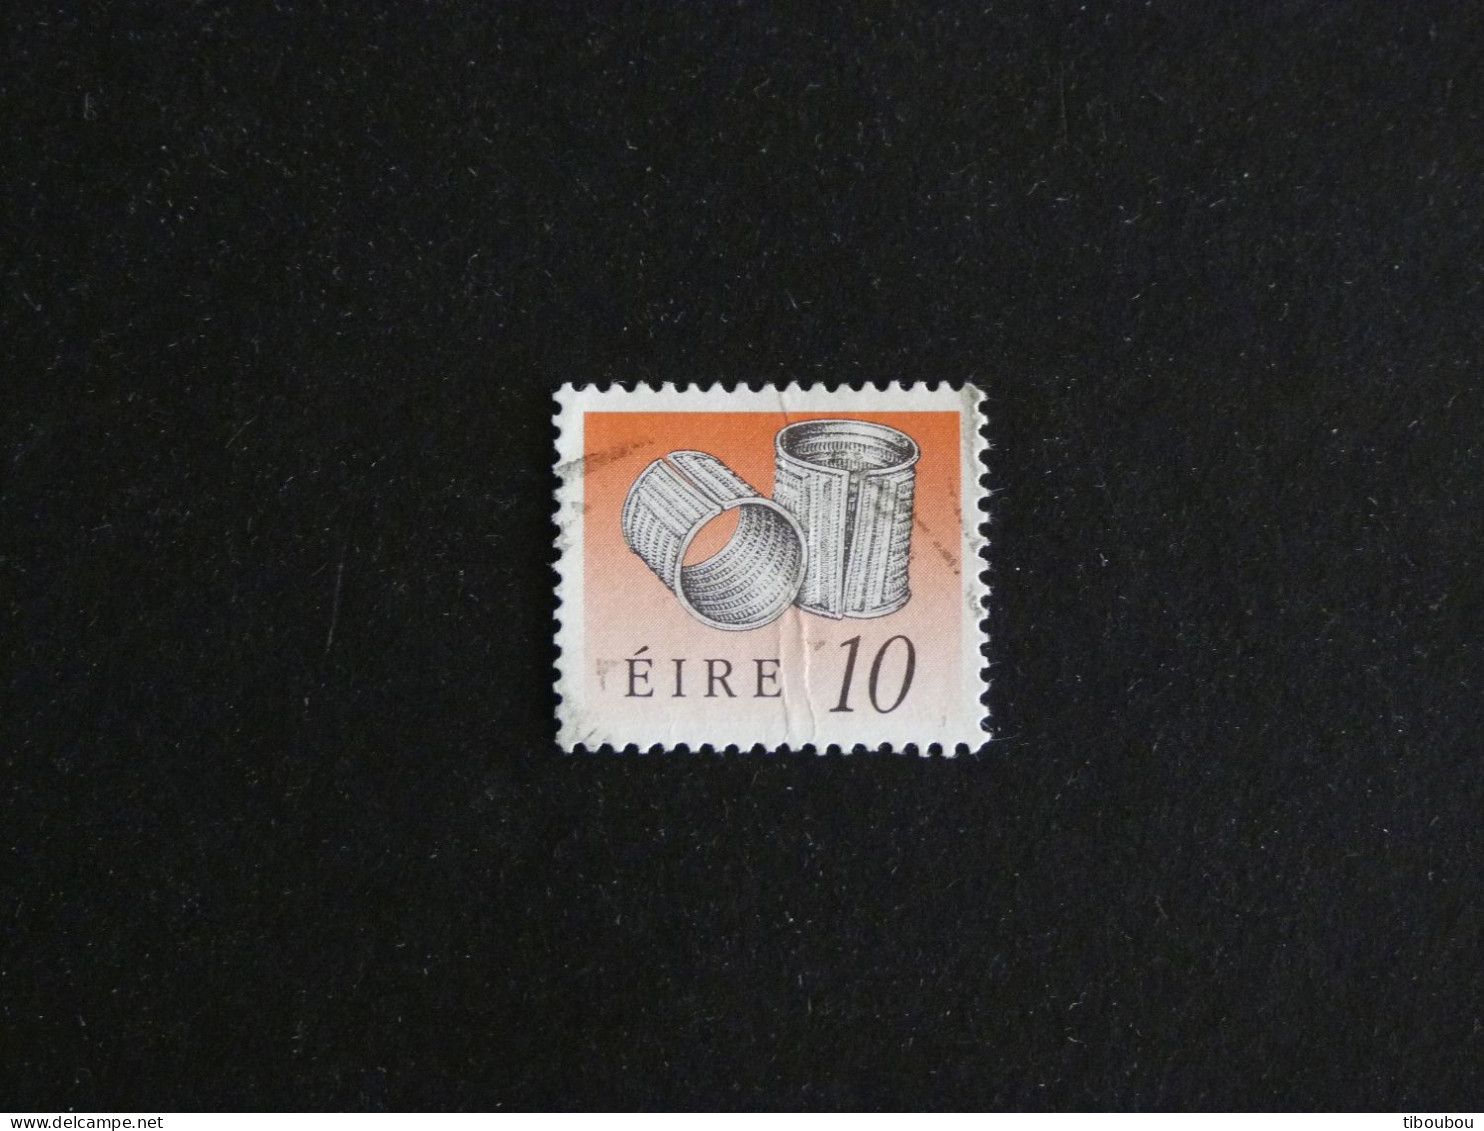 IRLANDE IRELAND EIRE YT 729 OBLITERE - BRACELETS DE DERRINBOY - Used Stamps